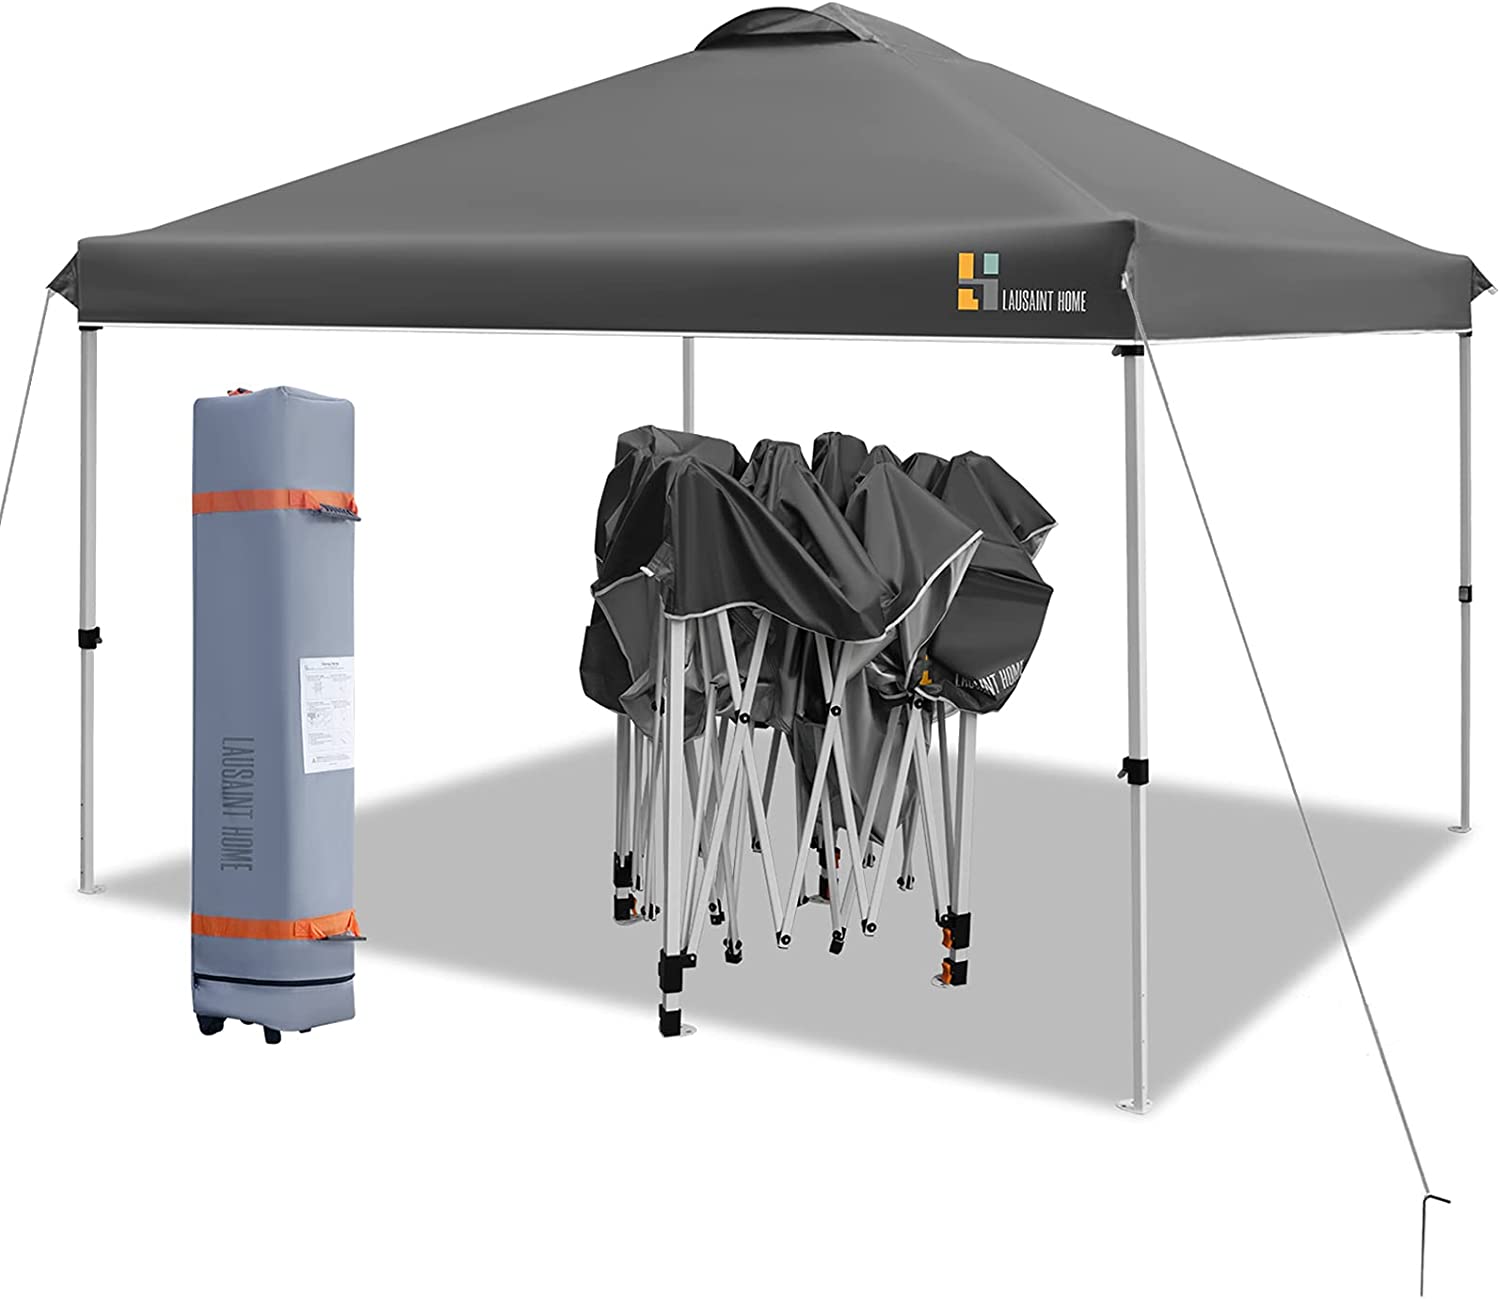 E-Z UP SR9104BL Sierra II Lightweight Pop-Up Canopy Tent, 10×10-Feet